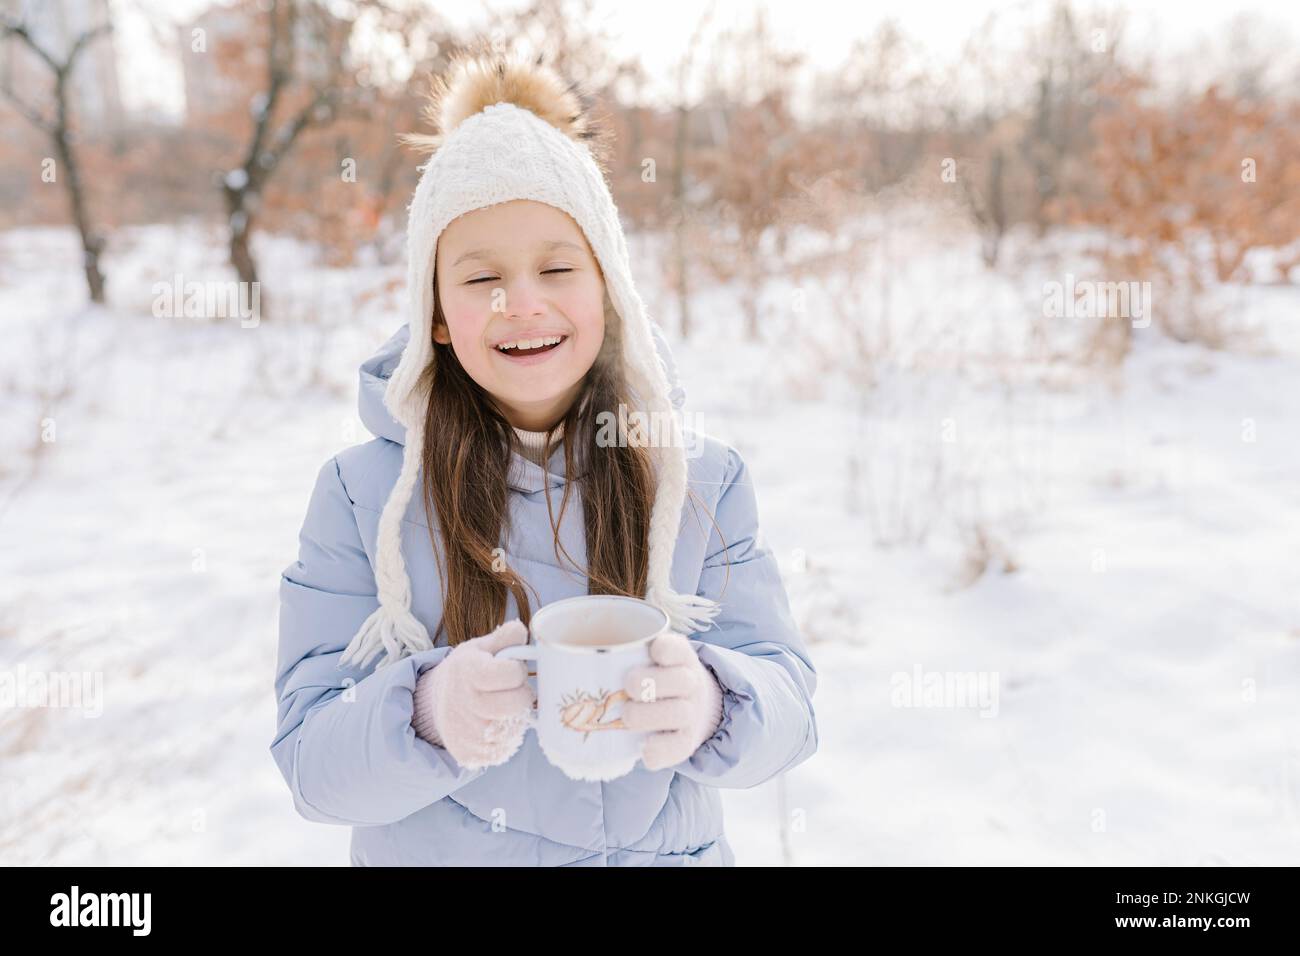 Bonne fille avec une tasse de chocolat chaud debout dans la neige Banque D'Images